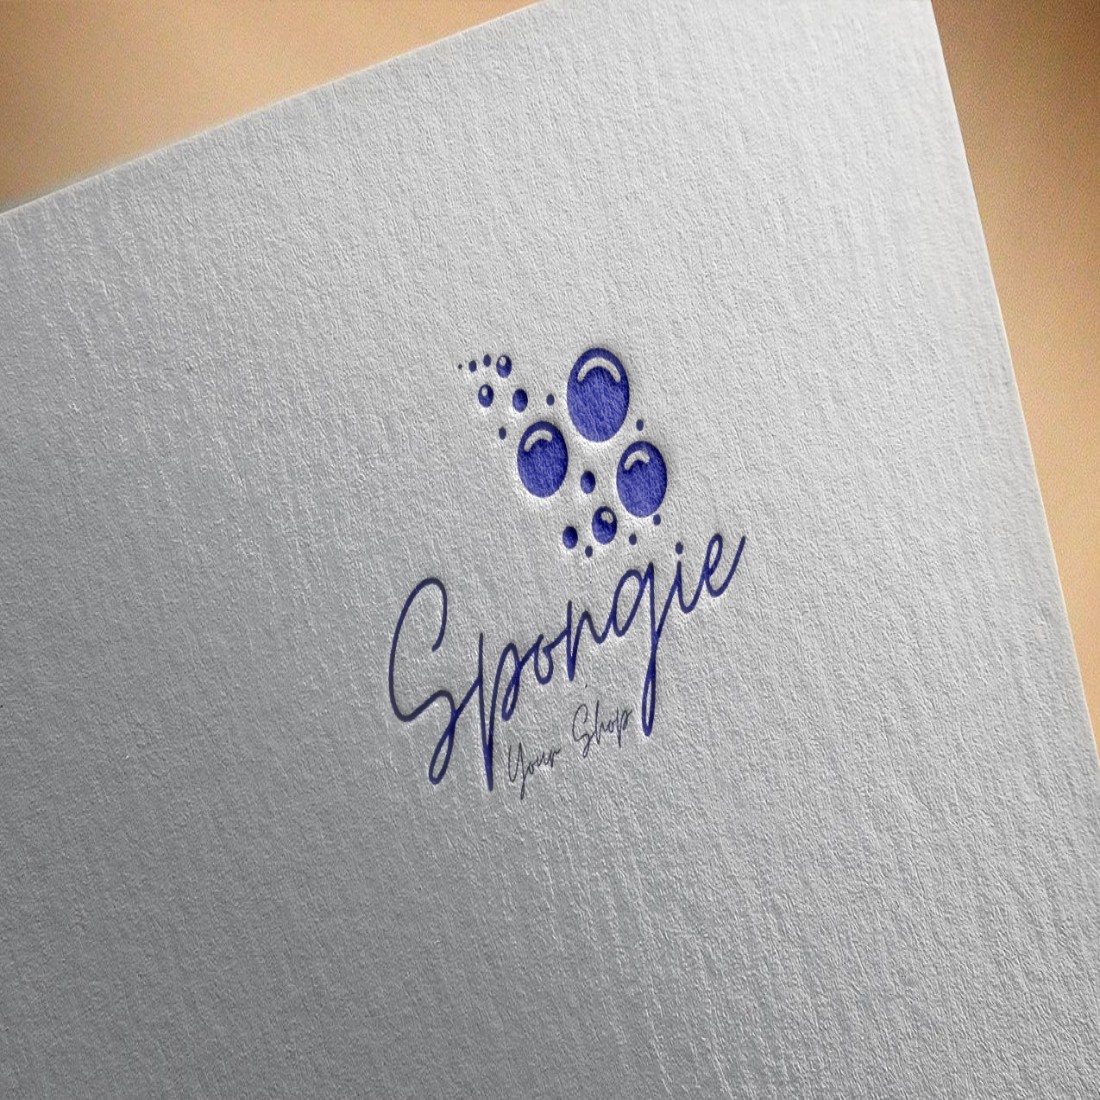 Spongie Logo Mockup Design cover image.